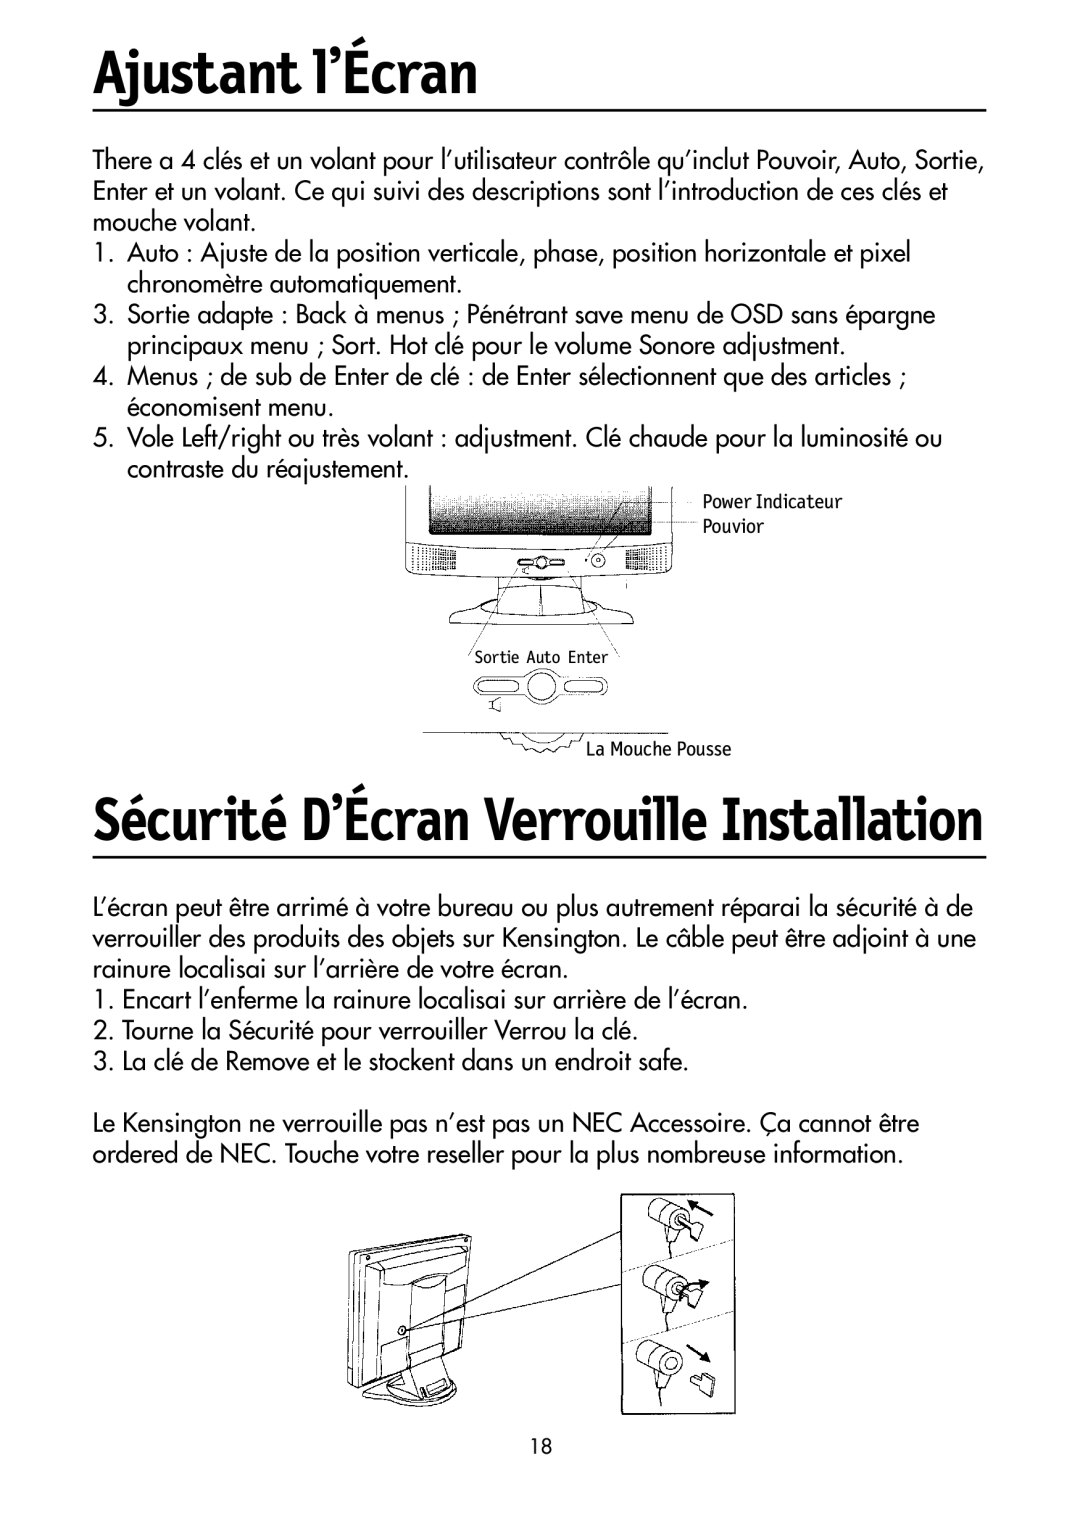 NEC LCD1700M user manual Ajustant l’Écran, Sécurité D’Écran Verrouille Installation 